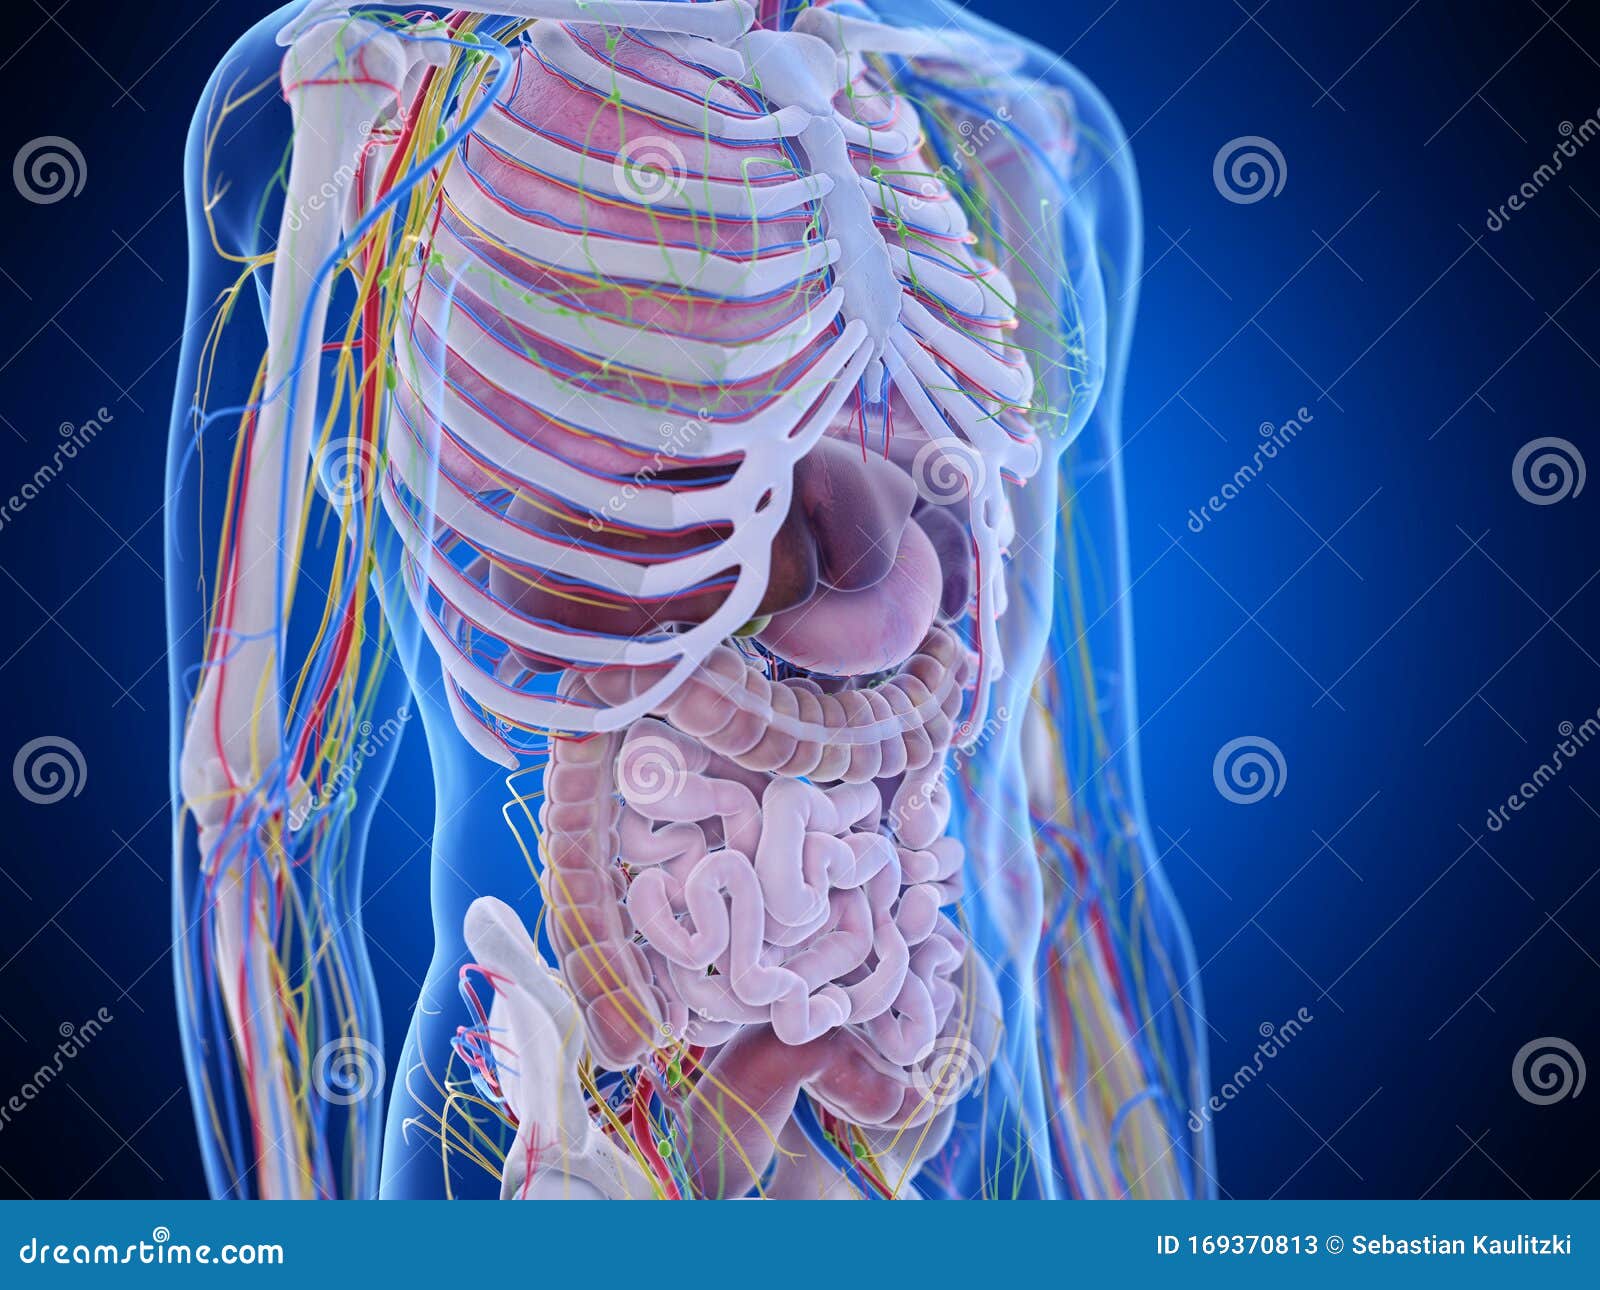 53.245 imágenes, fotos de stock, objetos en 3D y vectores sobre Anatomia  abdomen